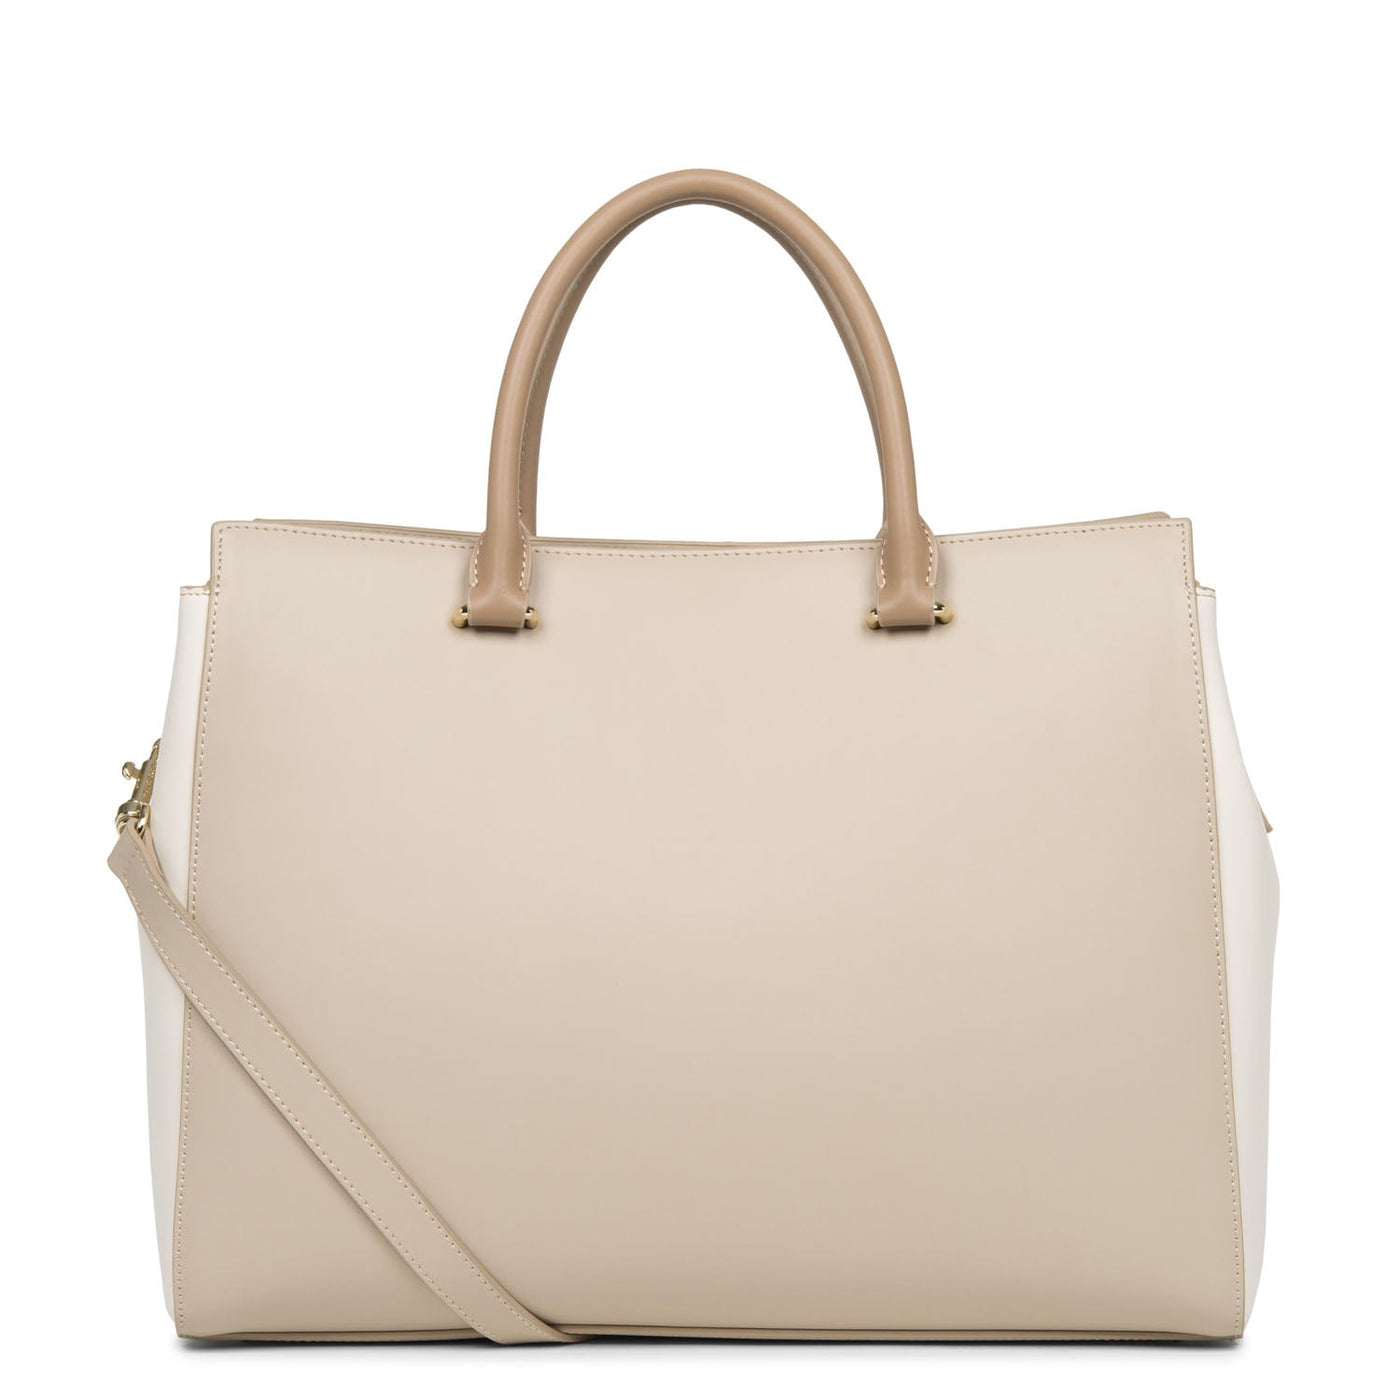 tote bag - smooth or #couleur_galet-ros-cru-nude